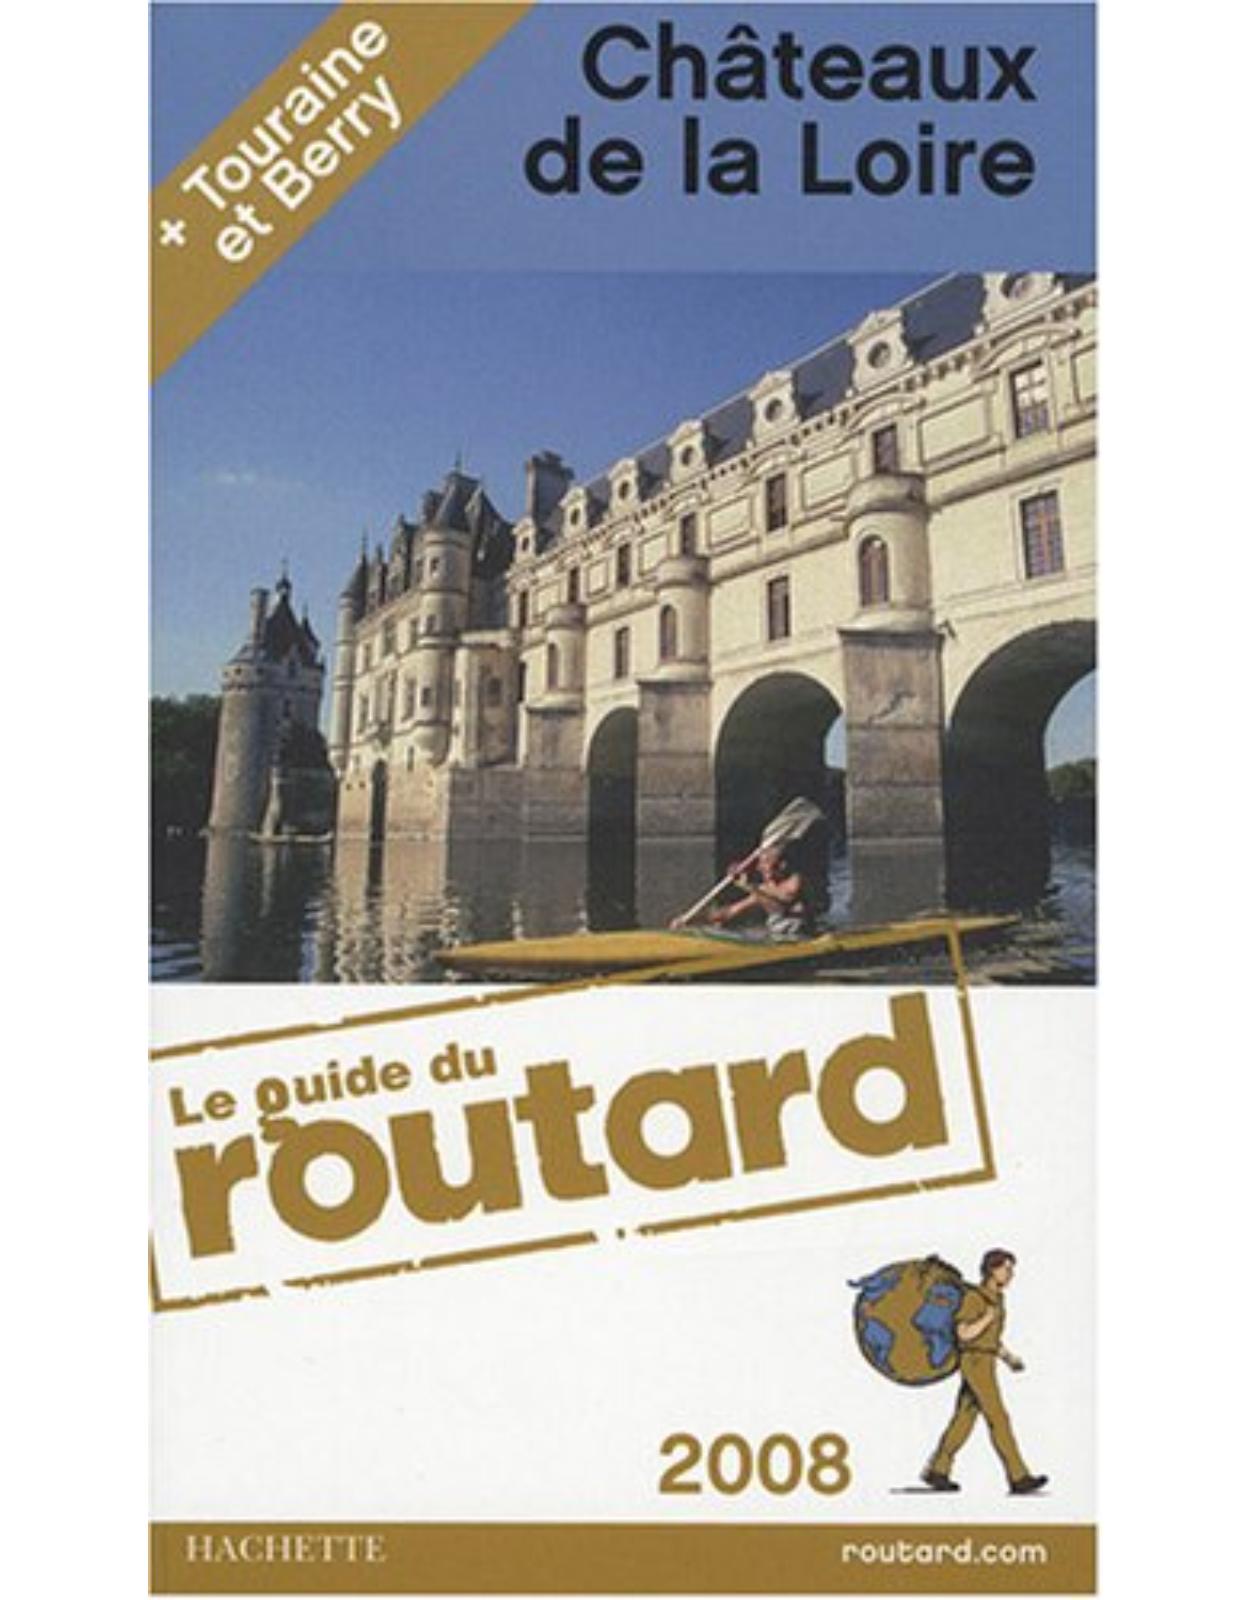 Le Guide du Routard - Châteaux de la Loire 2008